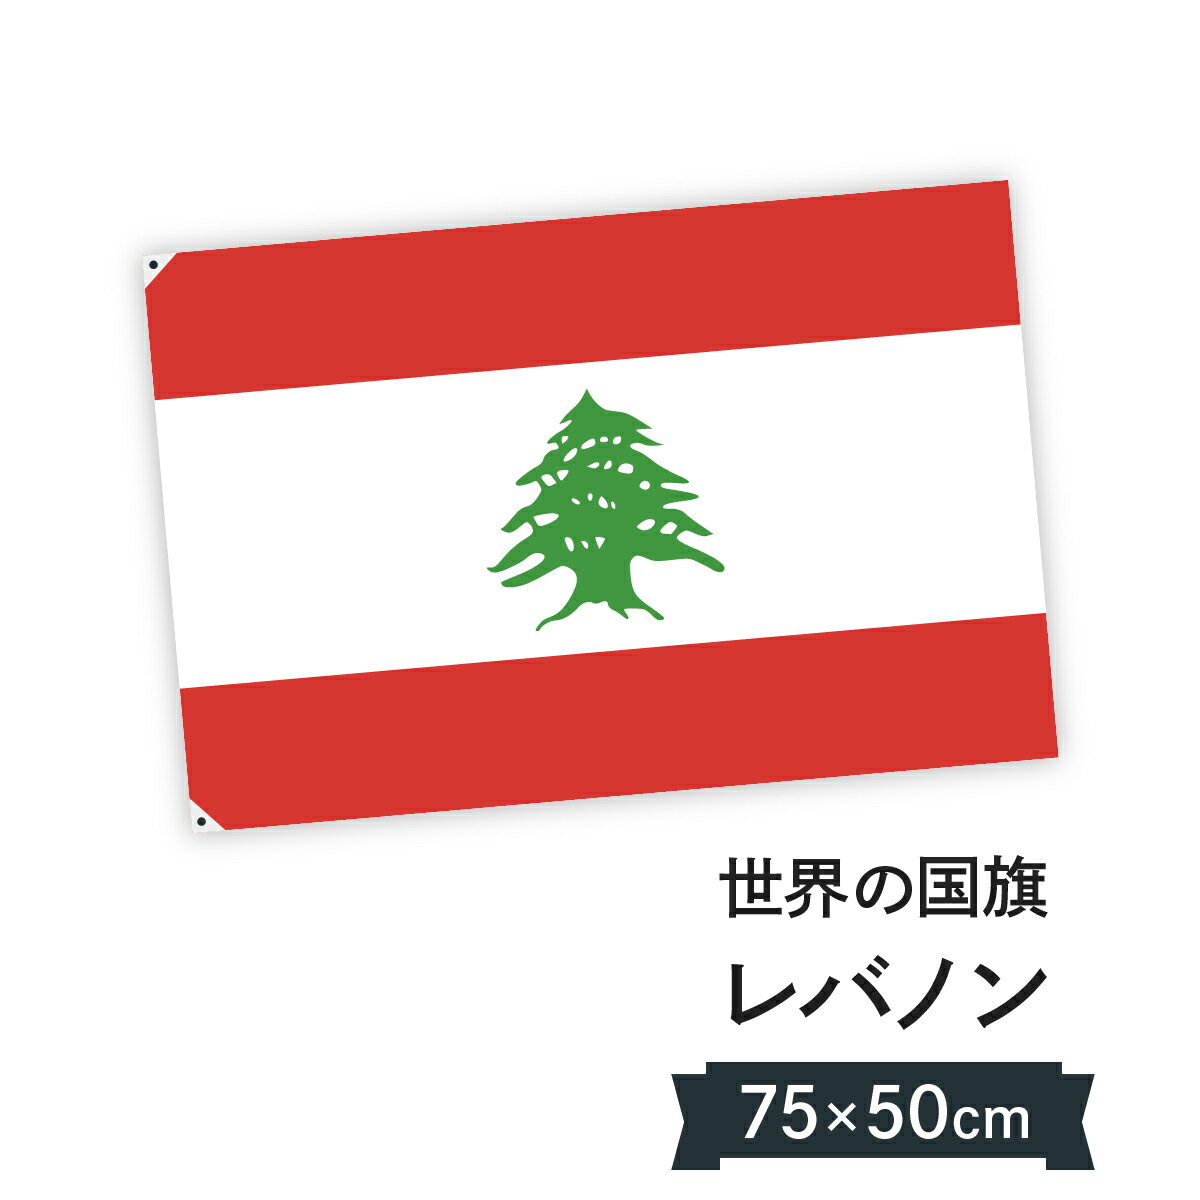 レバノン共和国 国旗 W75cm H50cm